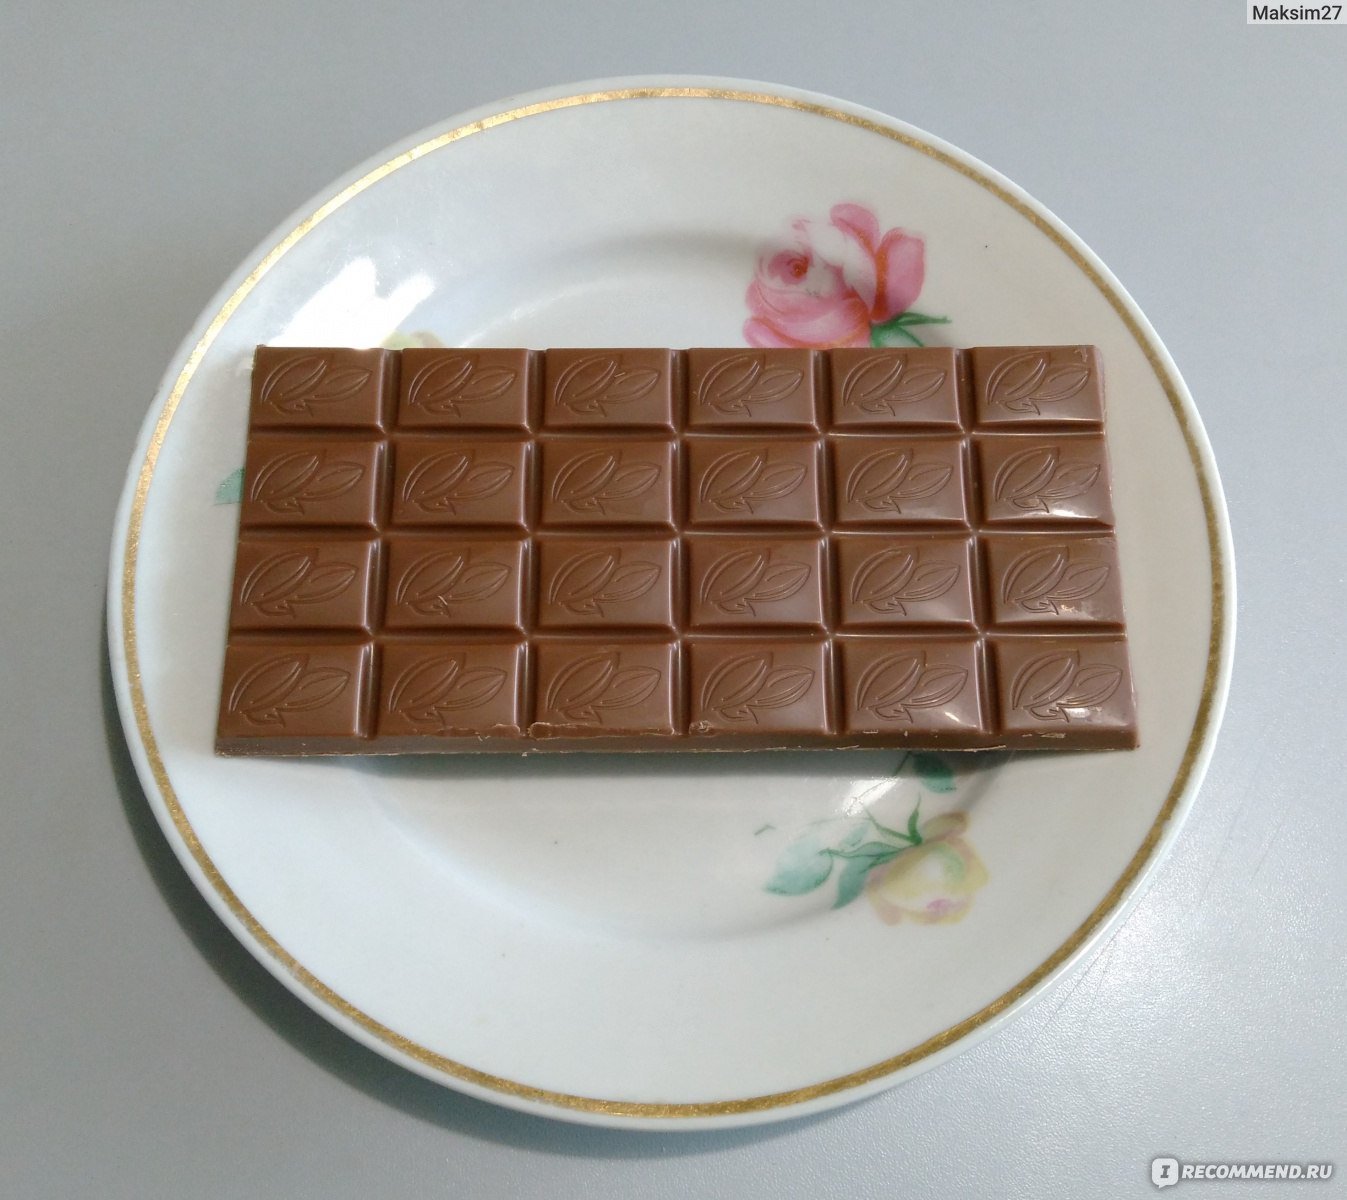 Просто шоколадка. Недорогие шоколадки. Шоколадки простые. Дешевый шоколад. Вкусные и недорогие шоколадки.